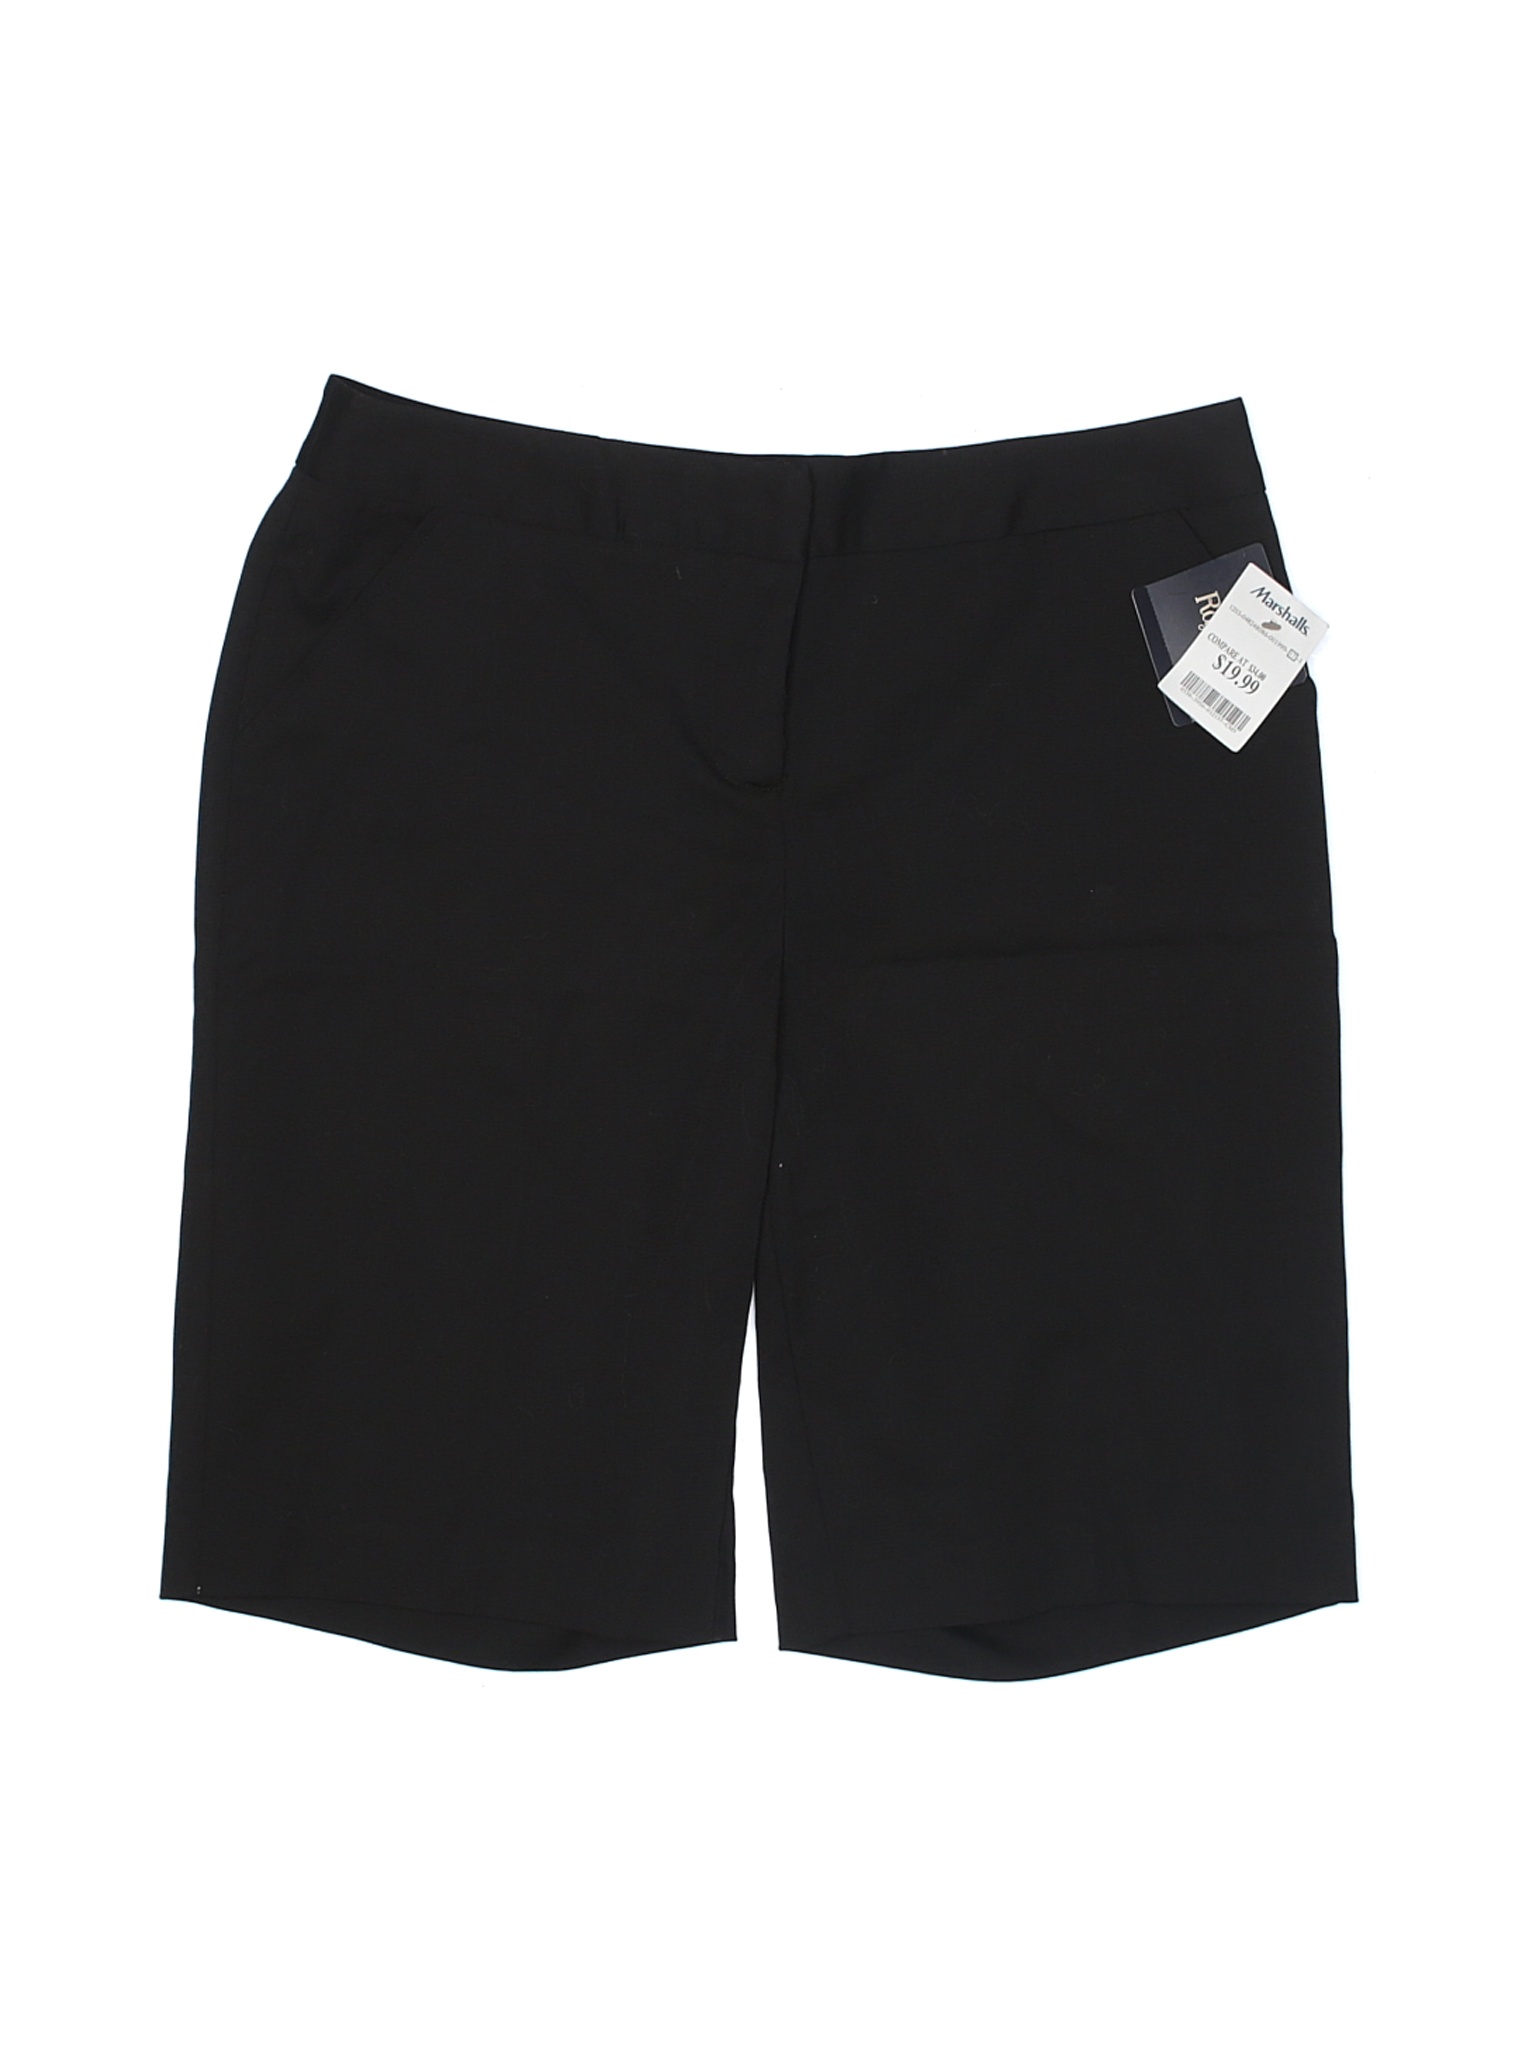 NWT Rafaella Women Black Dressy Shorts 10 | eBay